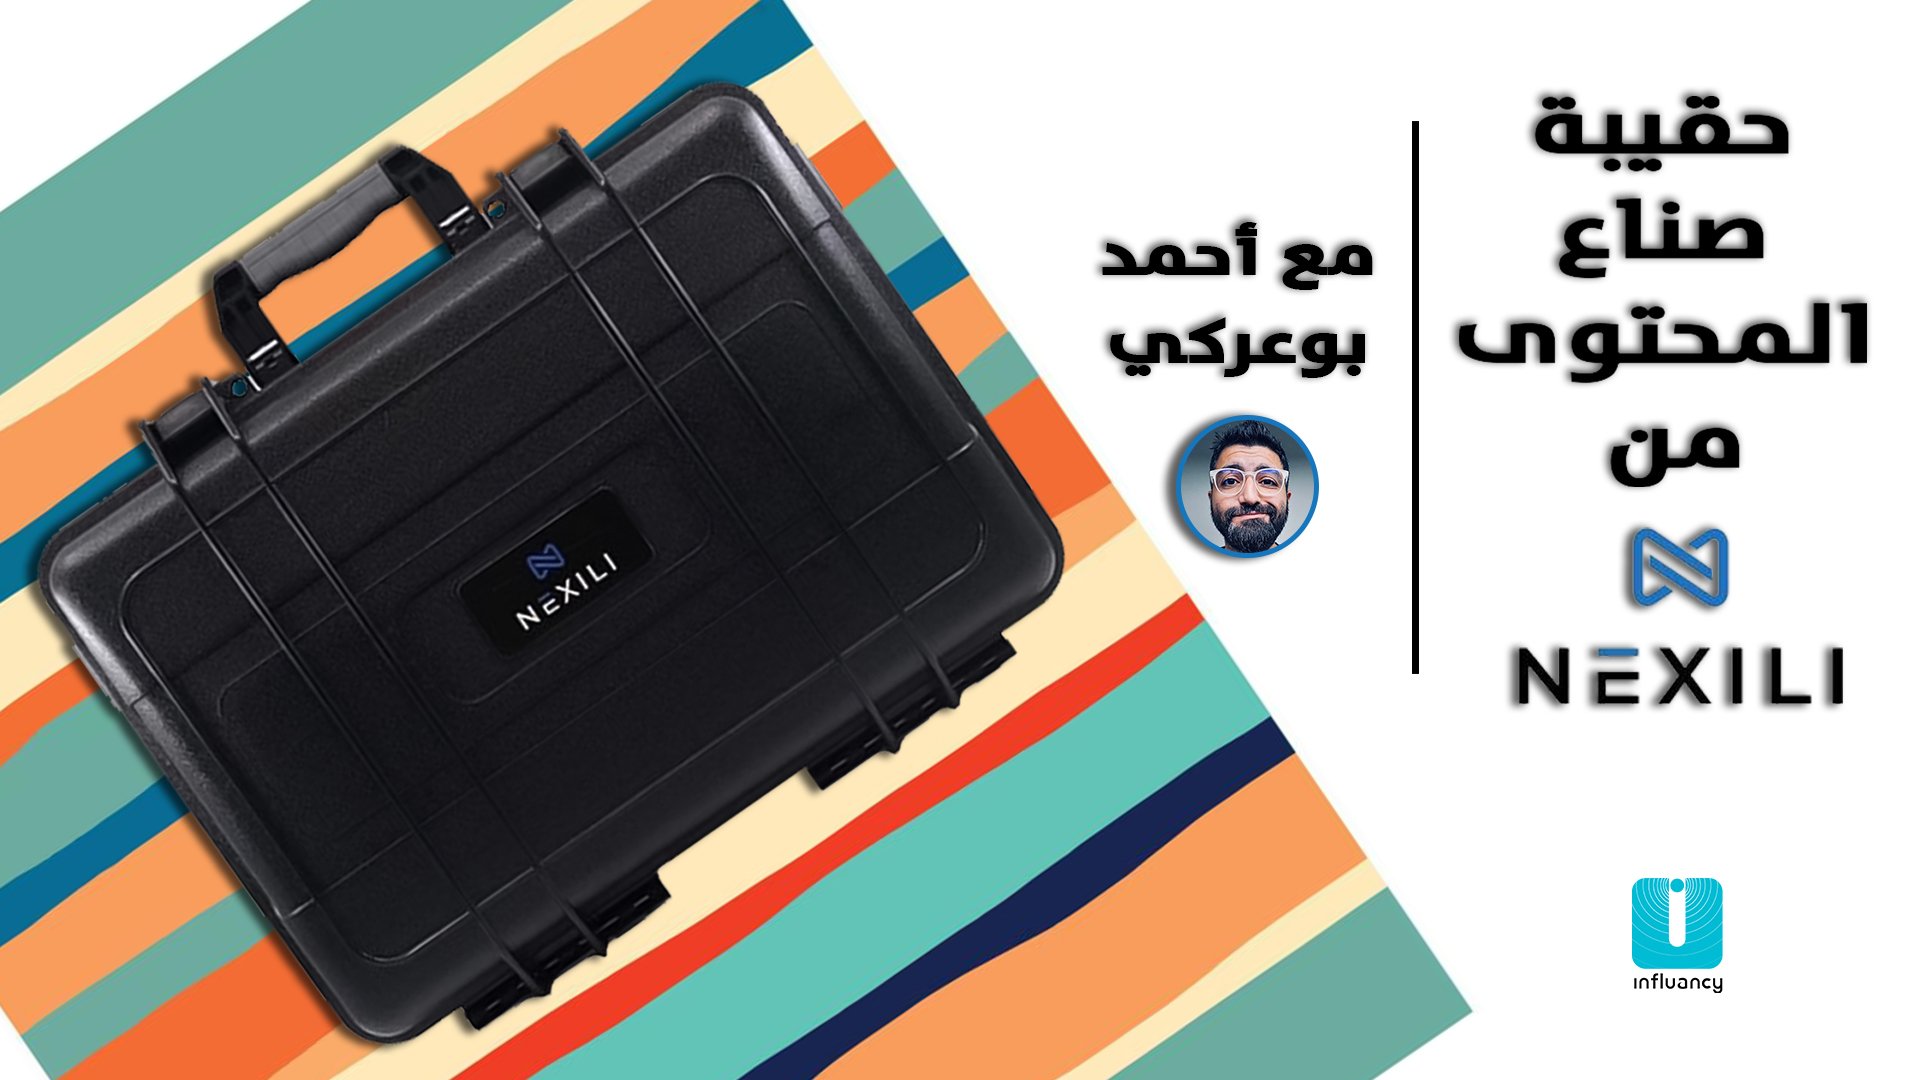 حقيبة صناع المحتوى من Nexili مع احمد بوعركي